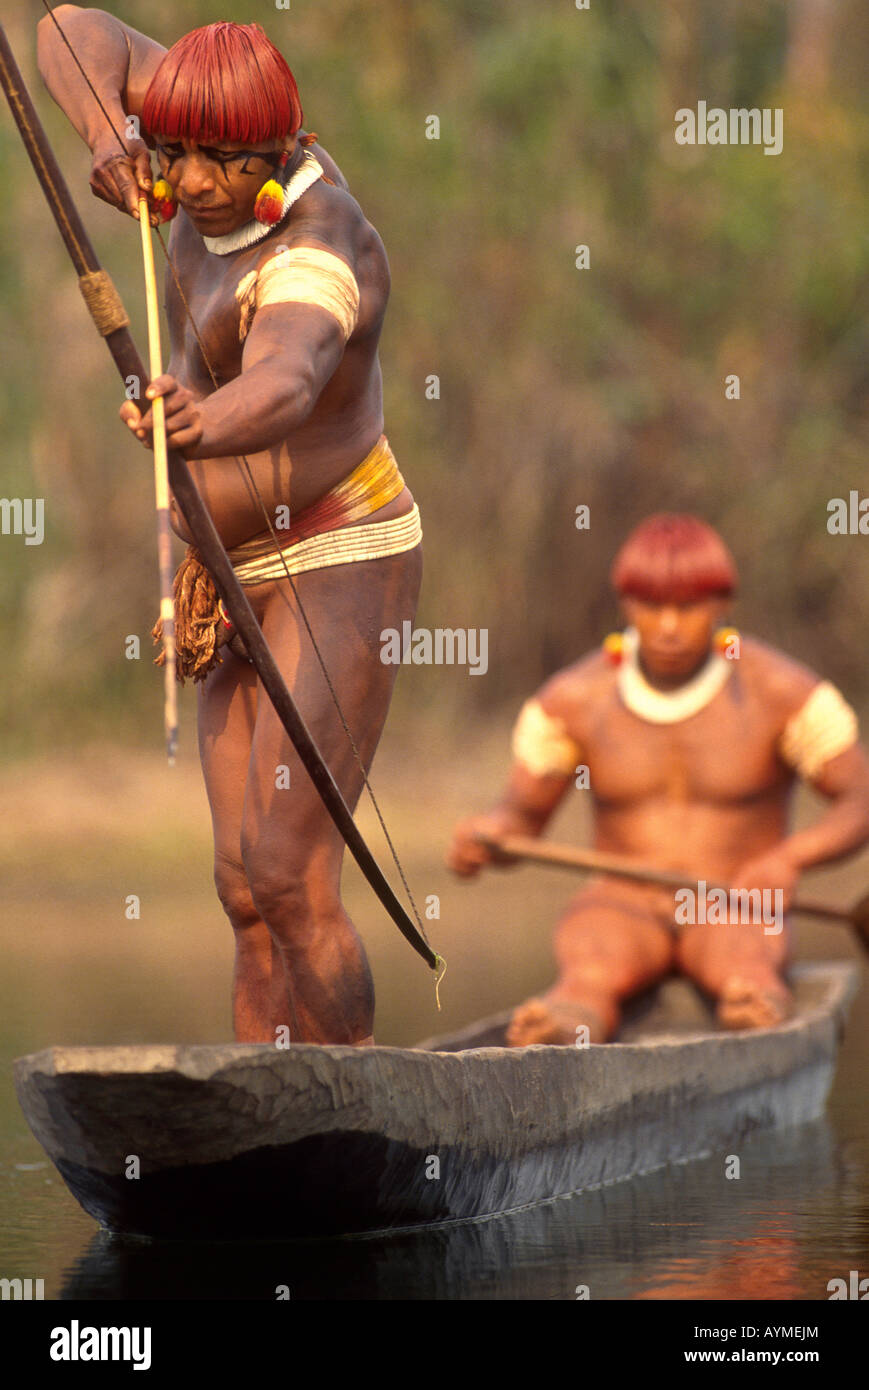 Amazon rainforest Xingu Brésil Yaulapiti les populations autochtones indiens dans la pêche en canoë avec arc et flèche Banque D'Images